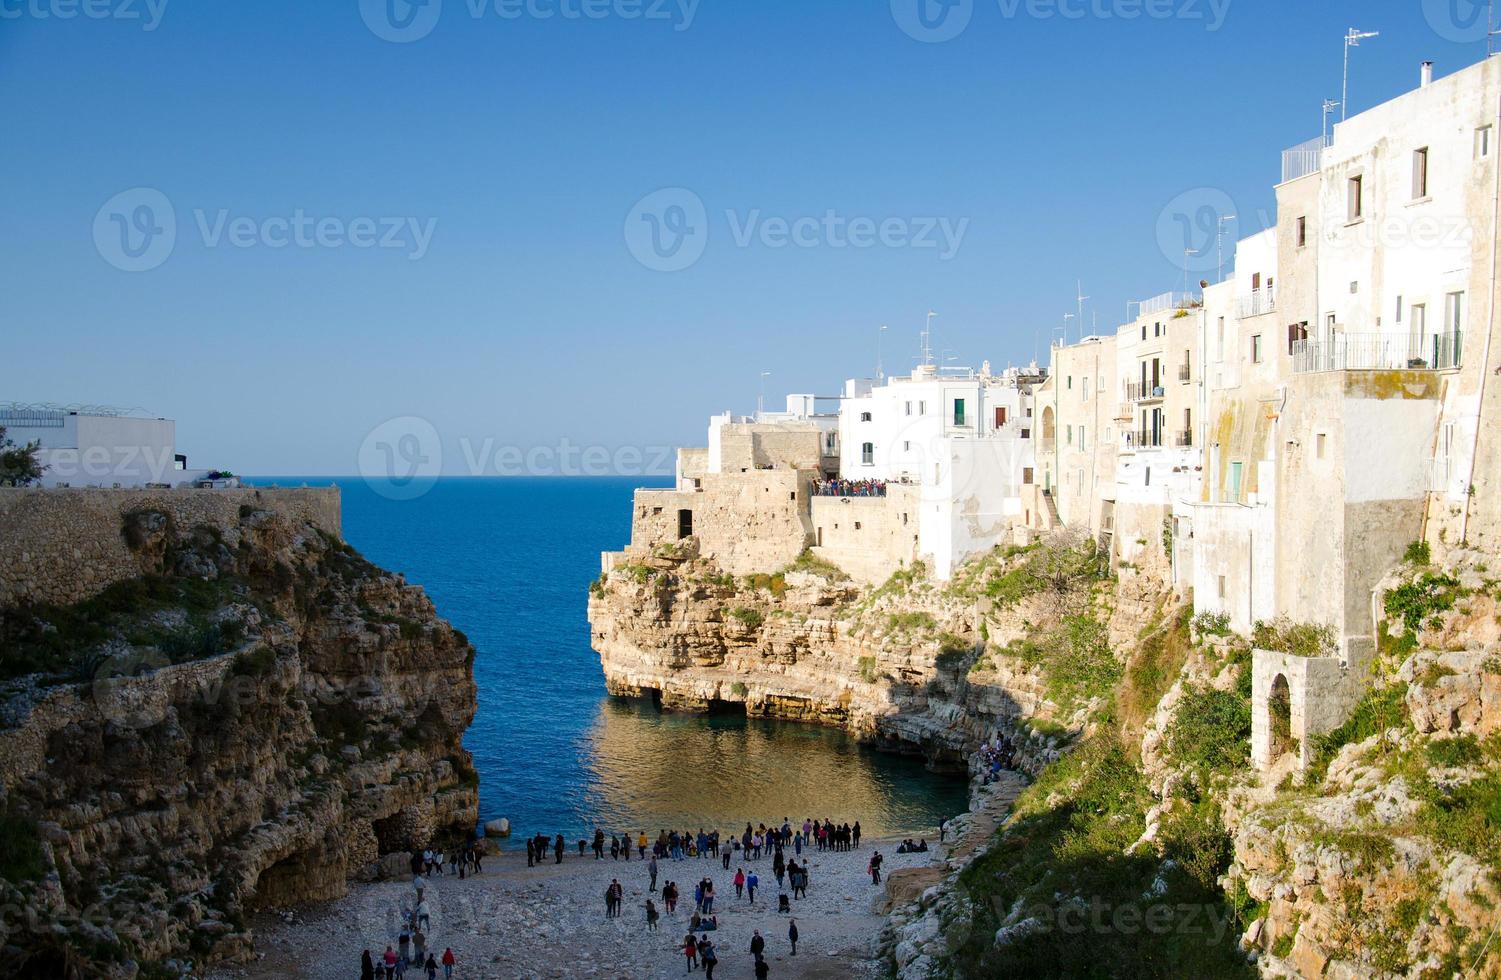 vista da praia lama monachile cala porto e edifícios brancos em grutas e falésias na cidade de polignano a mare foto